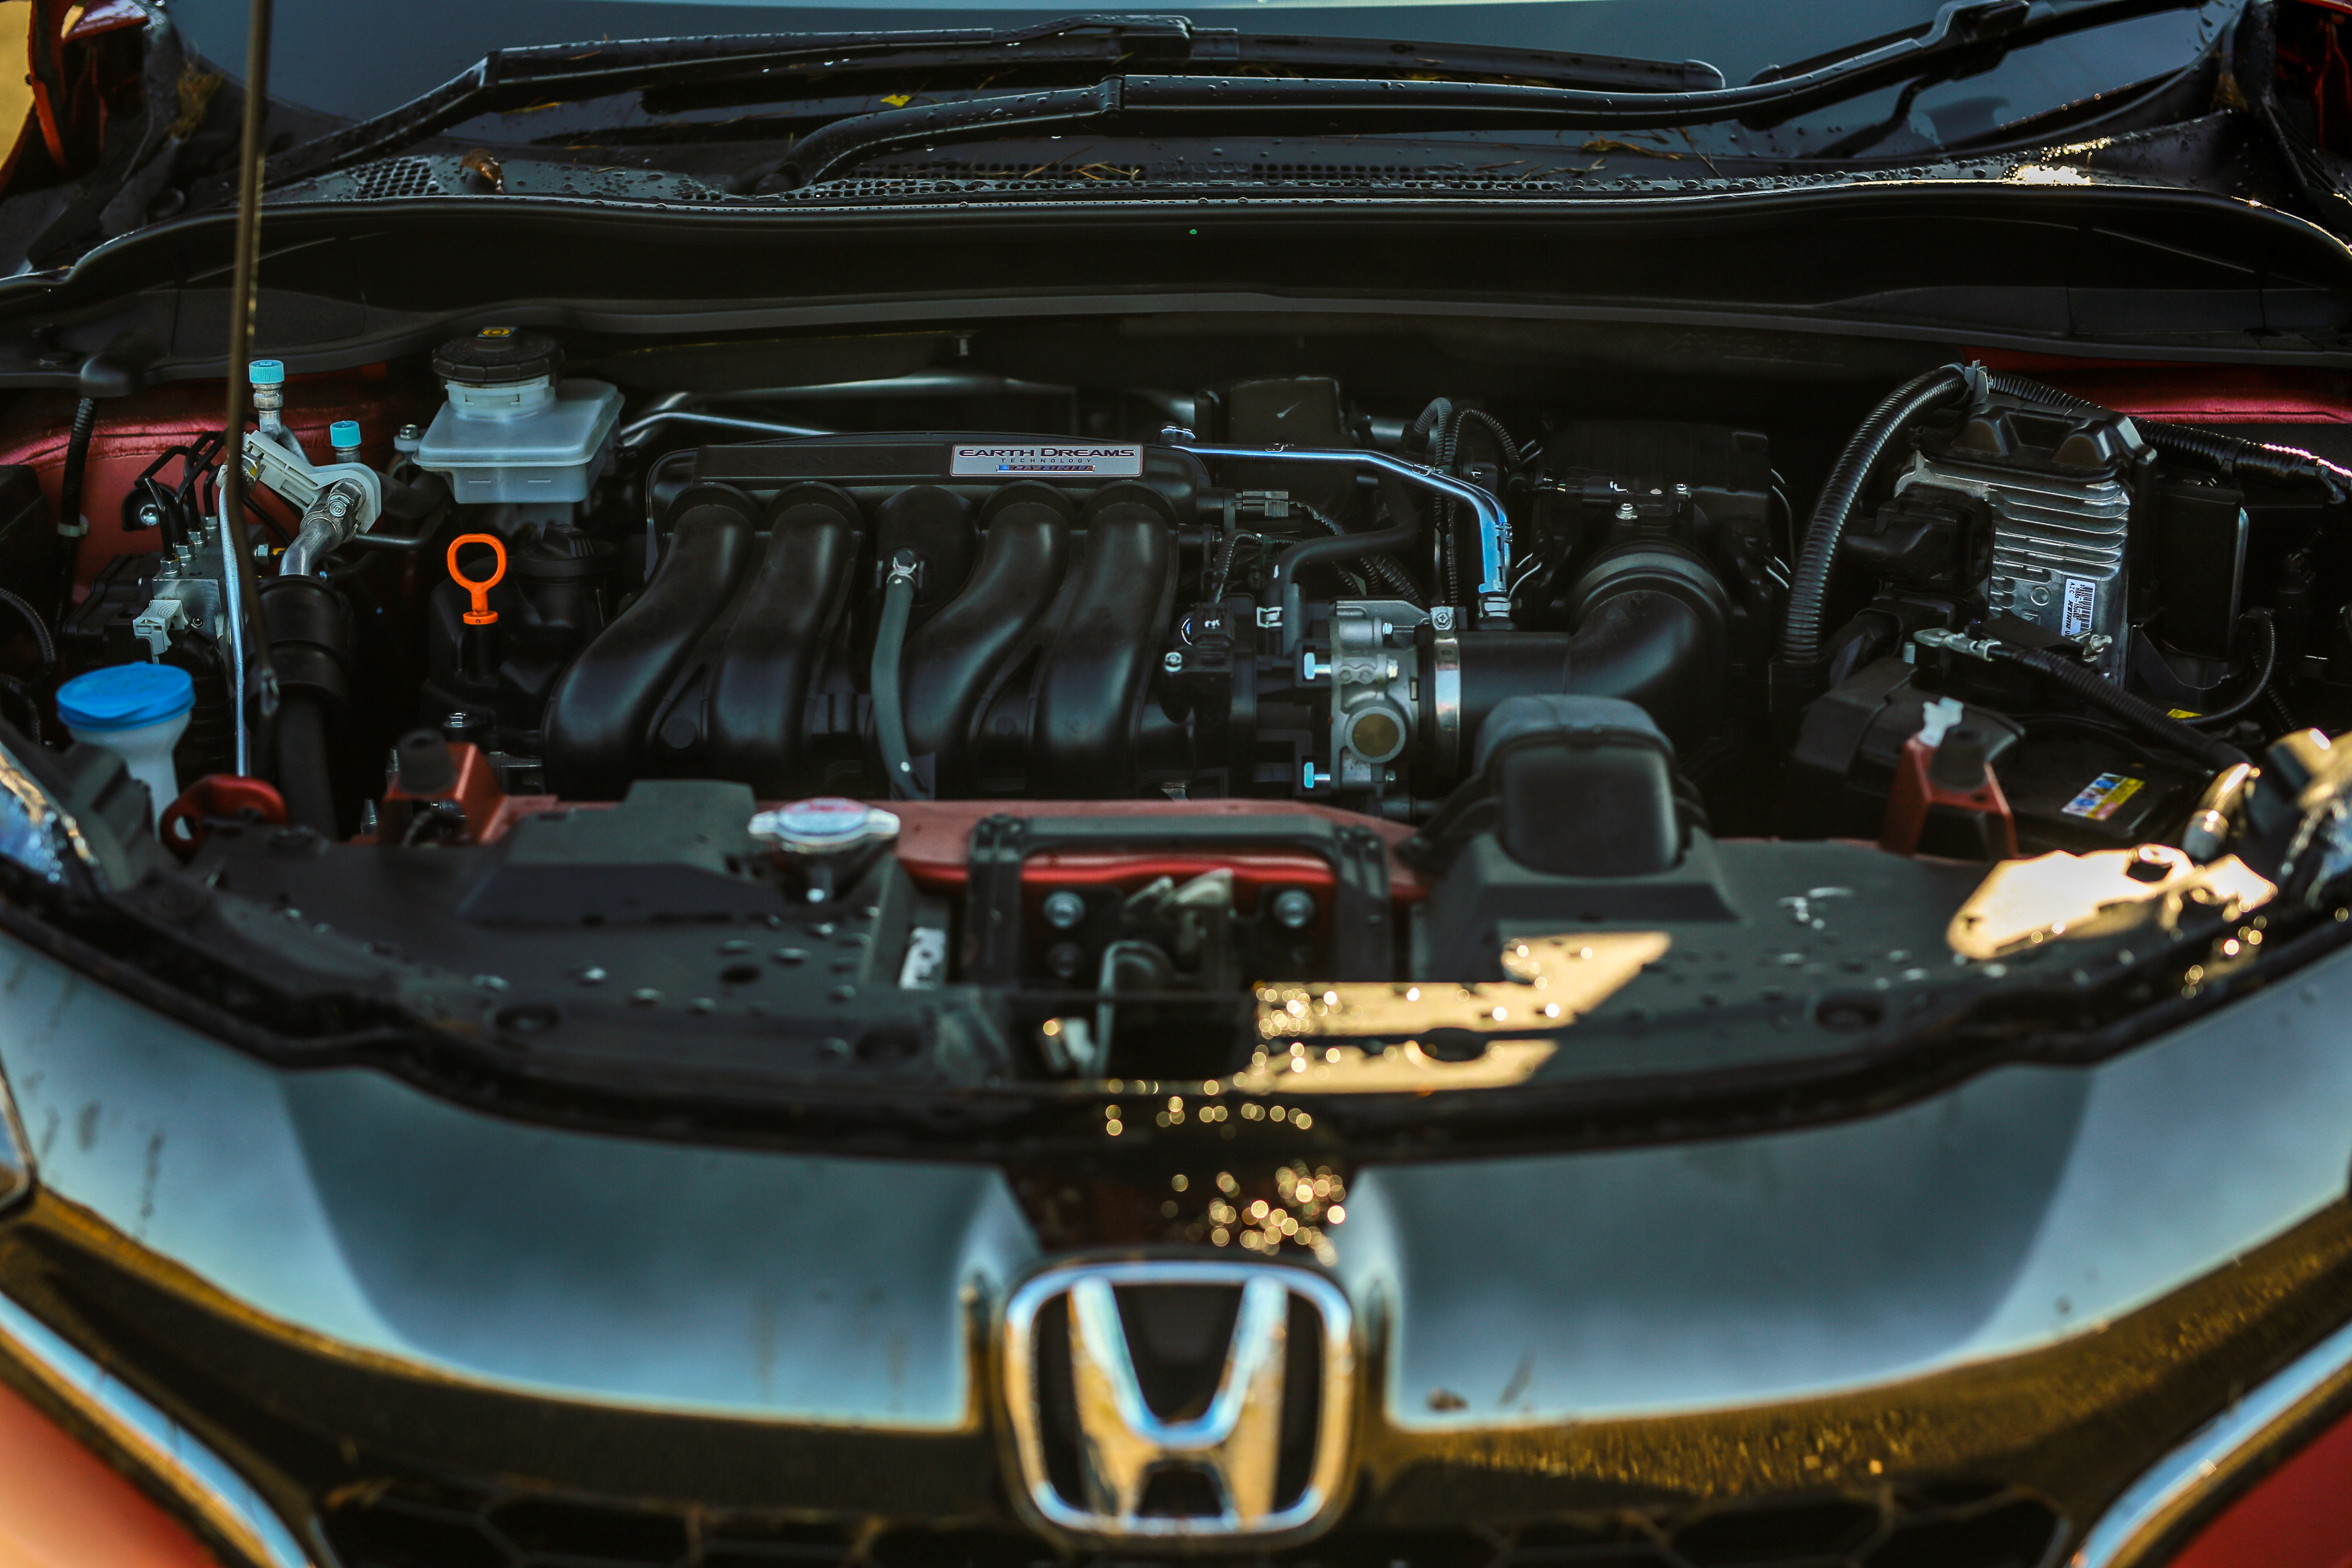 Honda vezel масло. Honda Vezel 2016 под капотом. Honda Vezel аккумулятор гибрида. Honda Vezel подкапотка. Honda HR-V под капотом.